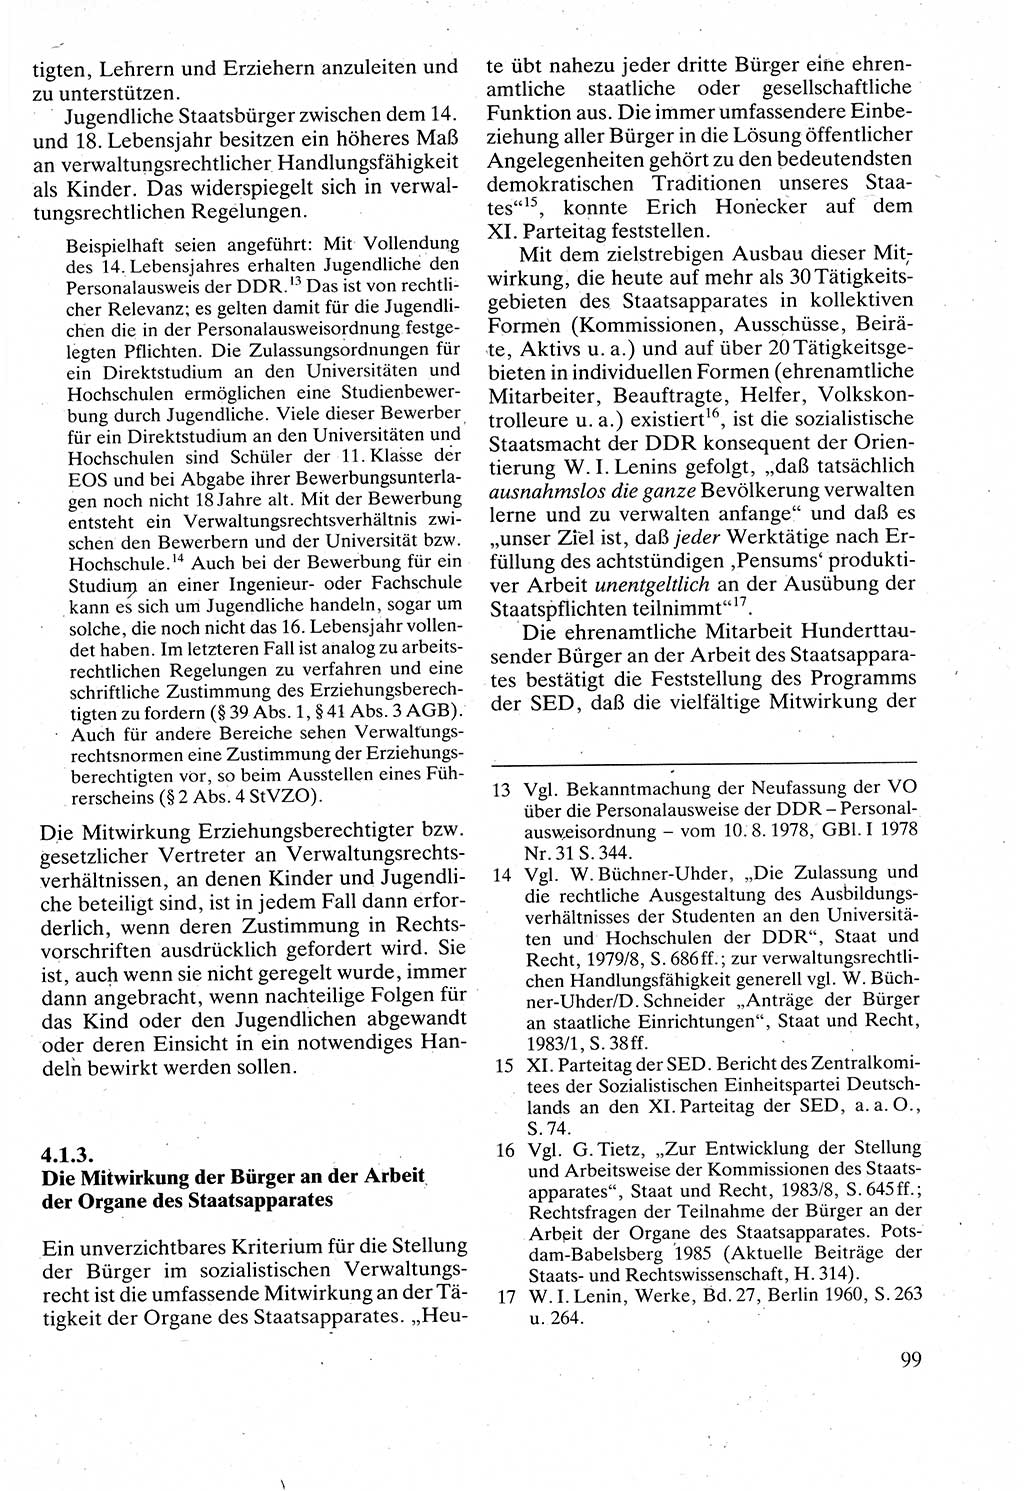 Verwaltungsrecht [Deutsche Demokratische Republik (DDR)], Lehrbuch 1988, Seite 99 (Verw.-R. DDR Lb. 1988, S. 99)